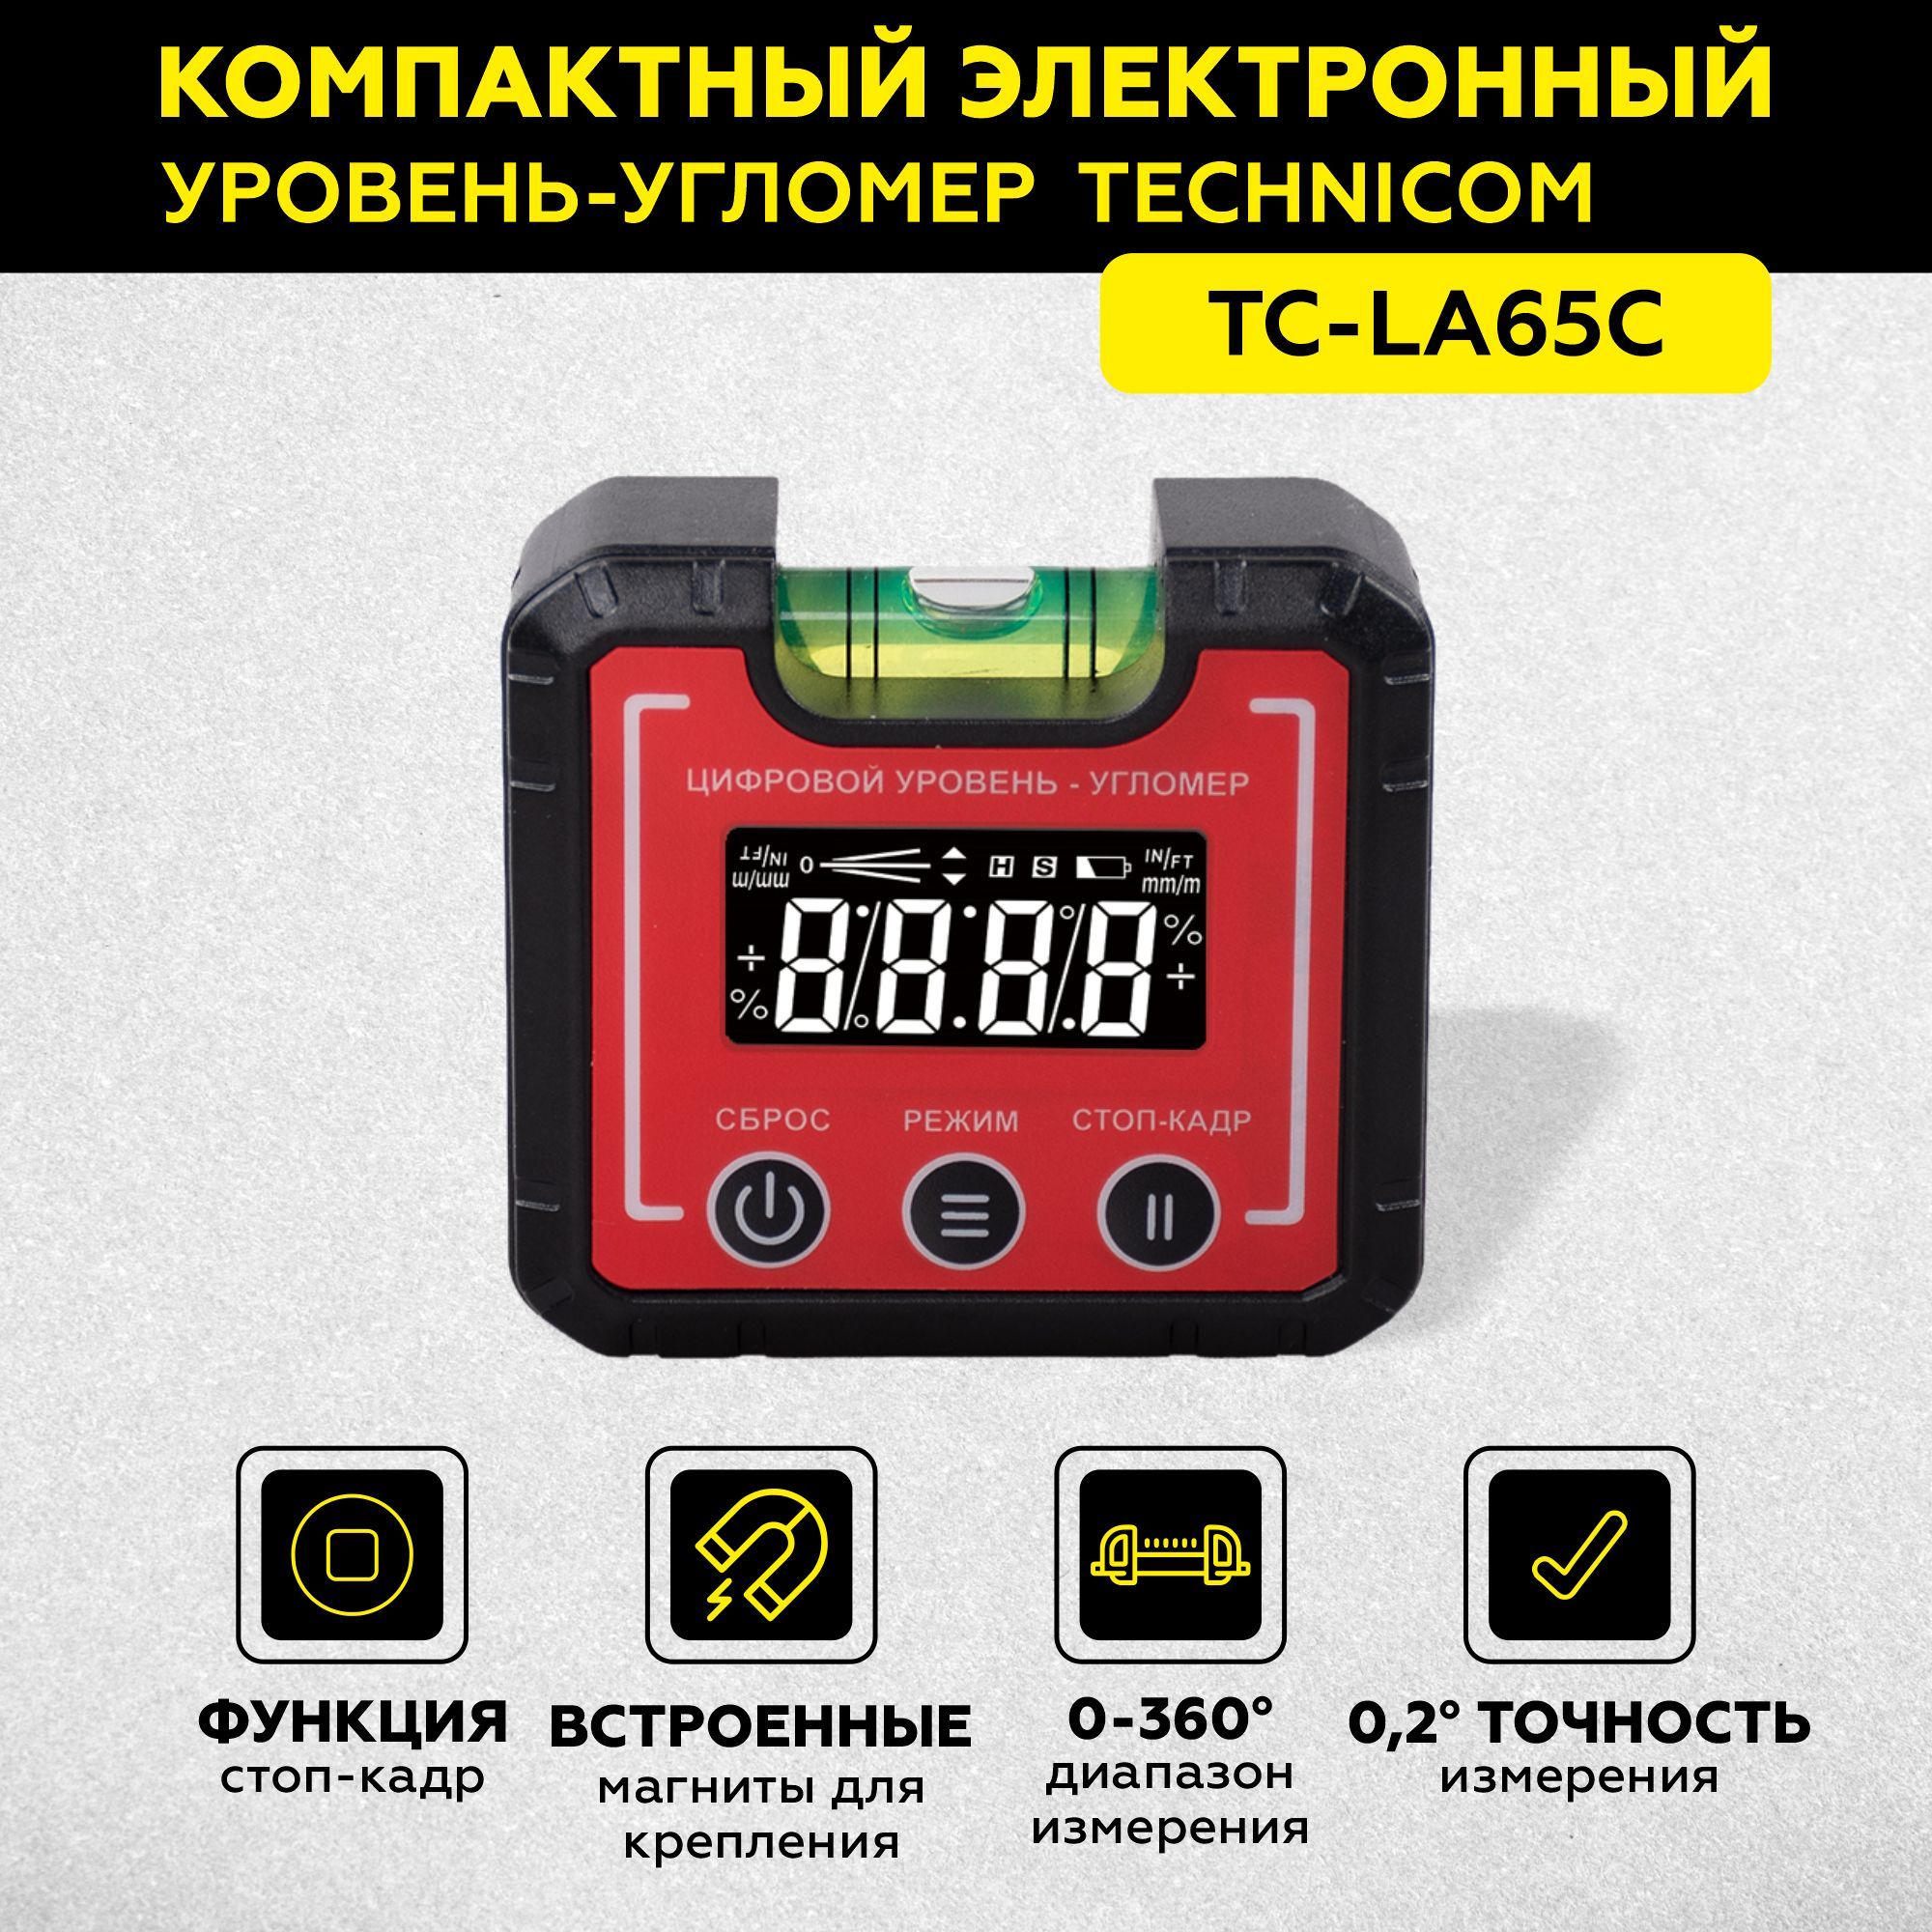 Электронный уровень-угломер с магнитом TECHNICOM 65 мм TC-LA65C электронный угломер technicom tc ar20